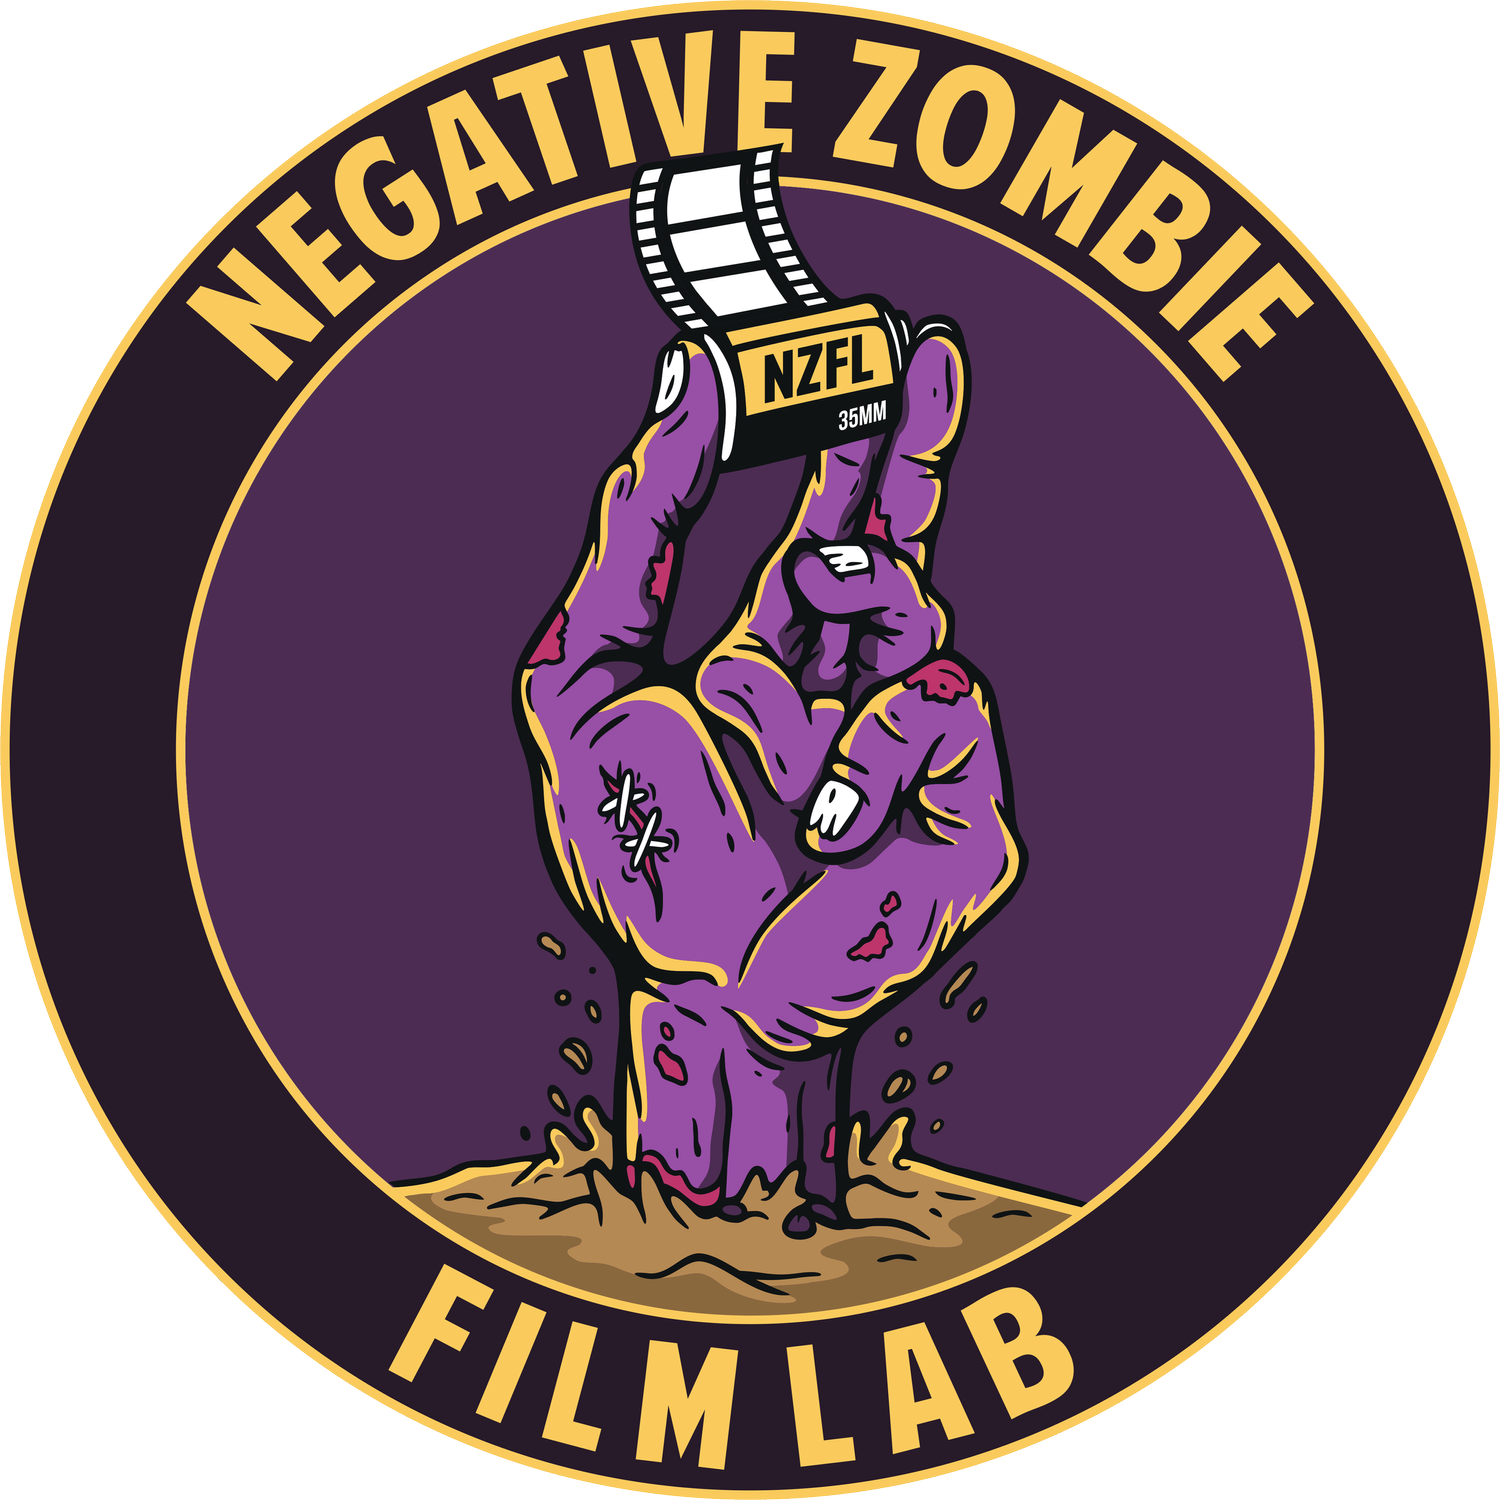 Negative Zombie Film Lab